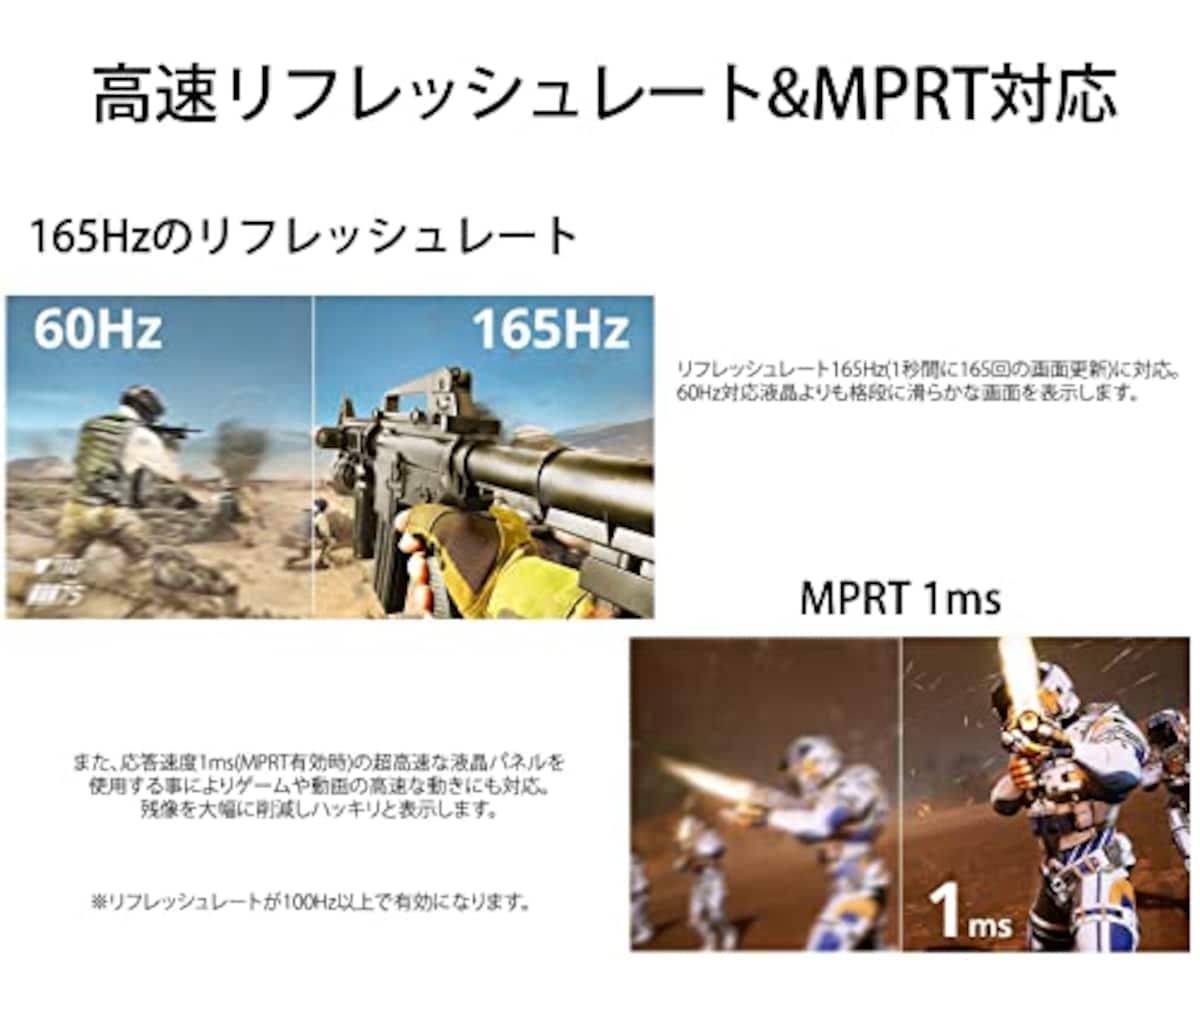  JAPANNEXT 23.8インチ フルHDパネル搭載165Hz対応ゲーミングモニター JN-VG238FHD165 HDMI DP 165Hz 144Hz画像2 